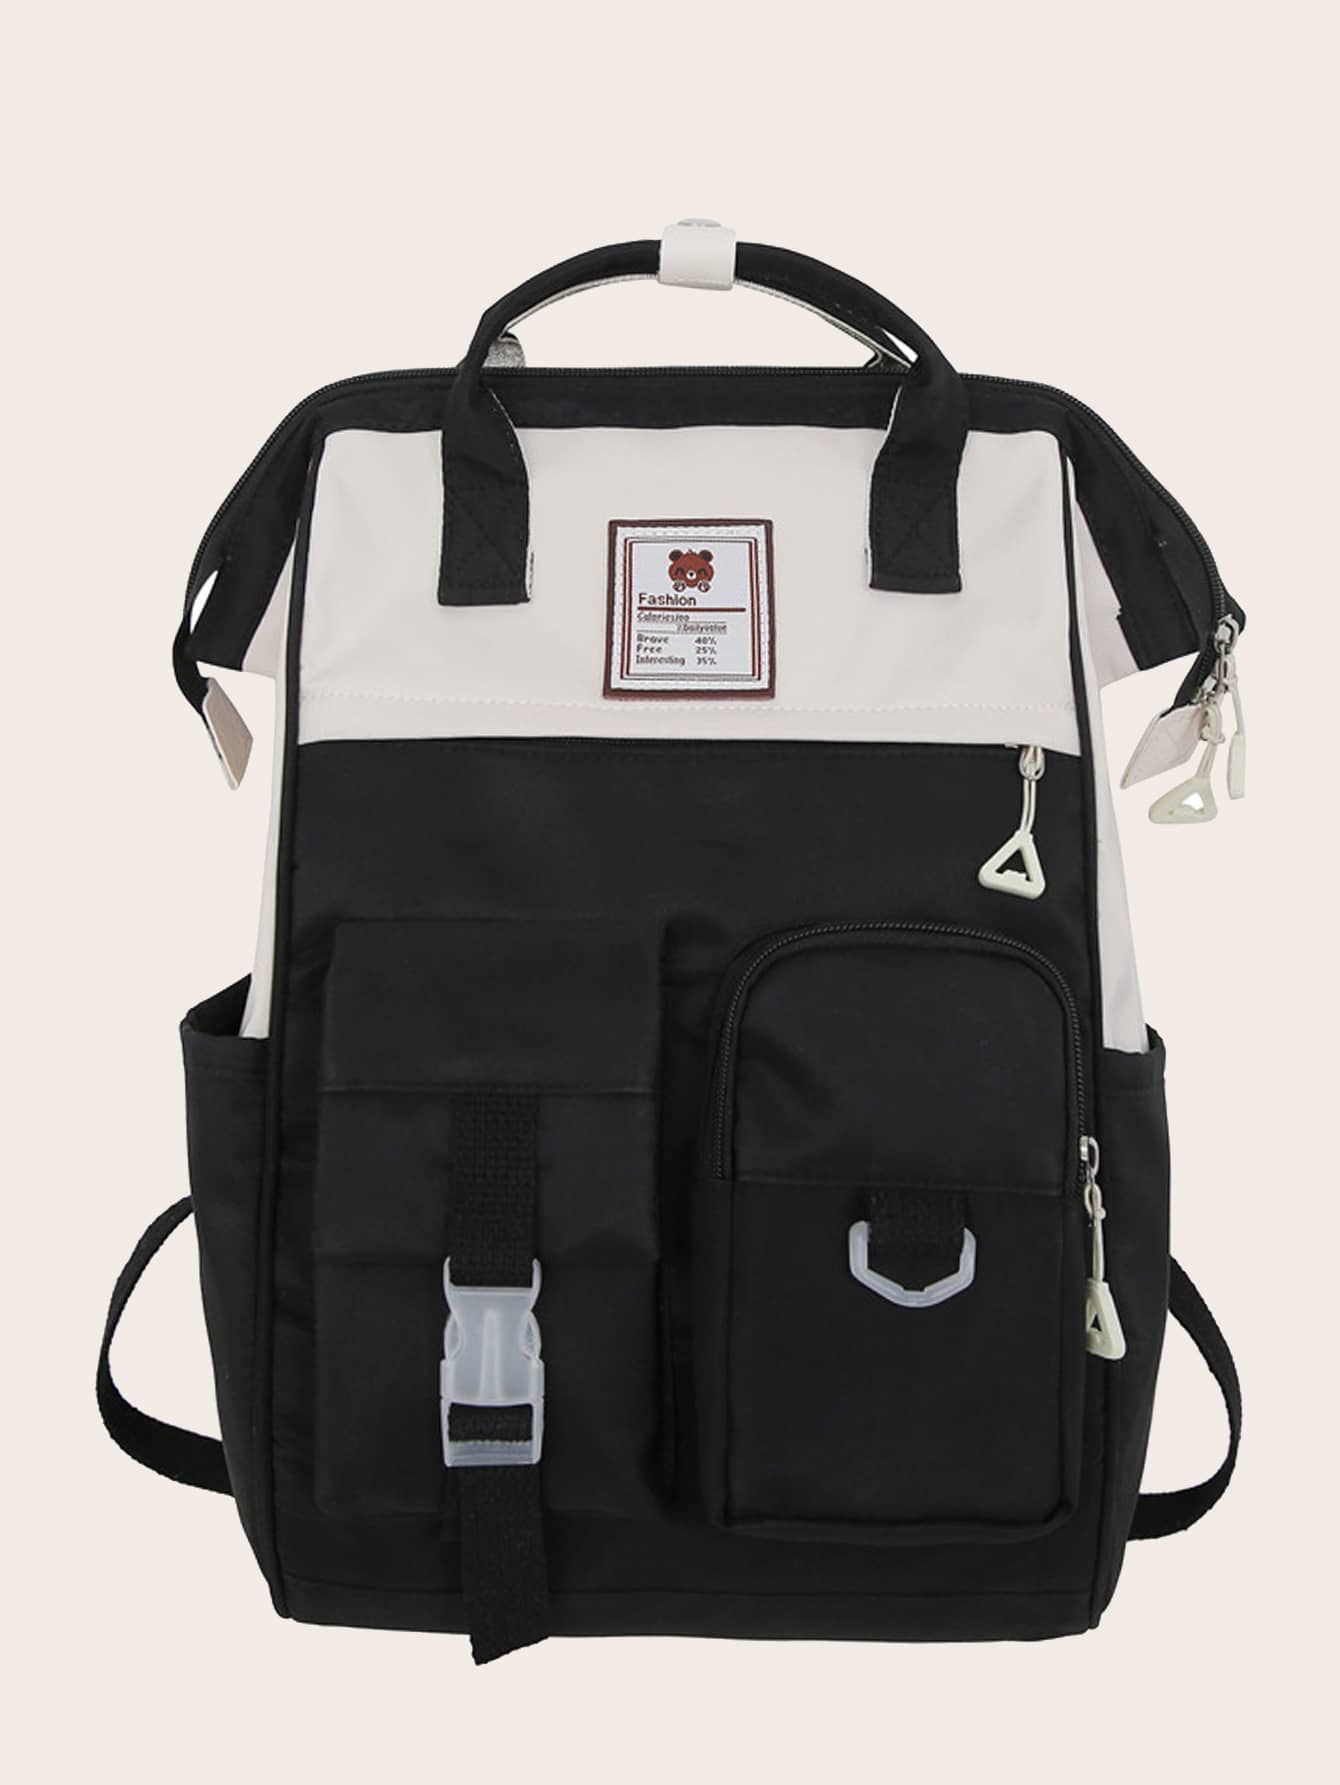 мясник и ножи мясницкий незаменимый безопасный уютный плед рюкзак 17 дюймов винтажный графический винтажный рюкзак для пикников Женский винтажный однотонный функциональный рюкзак, черное и белое